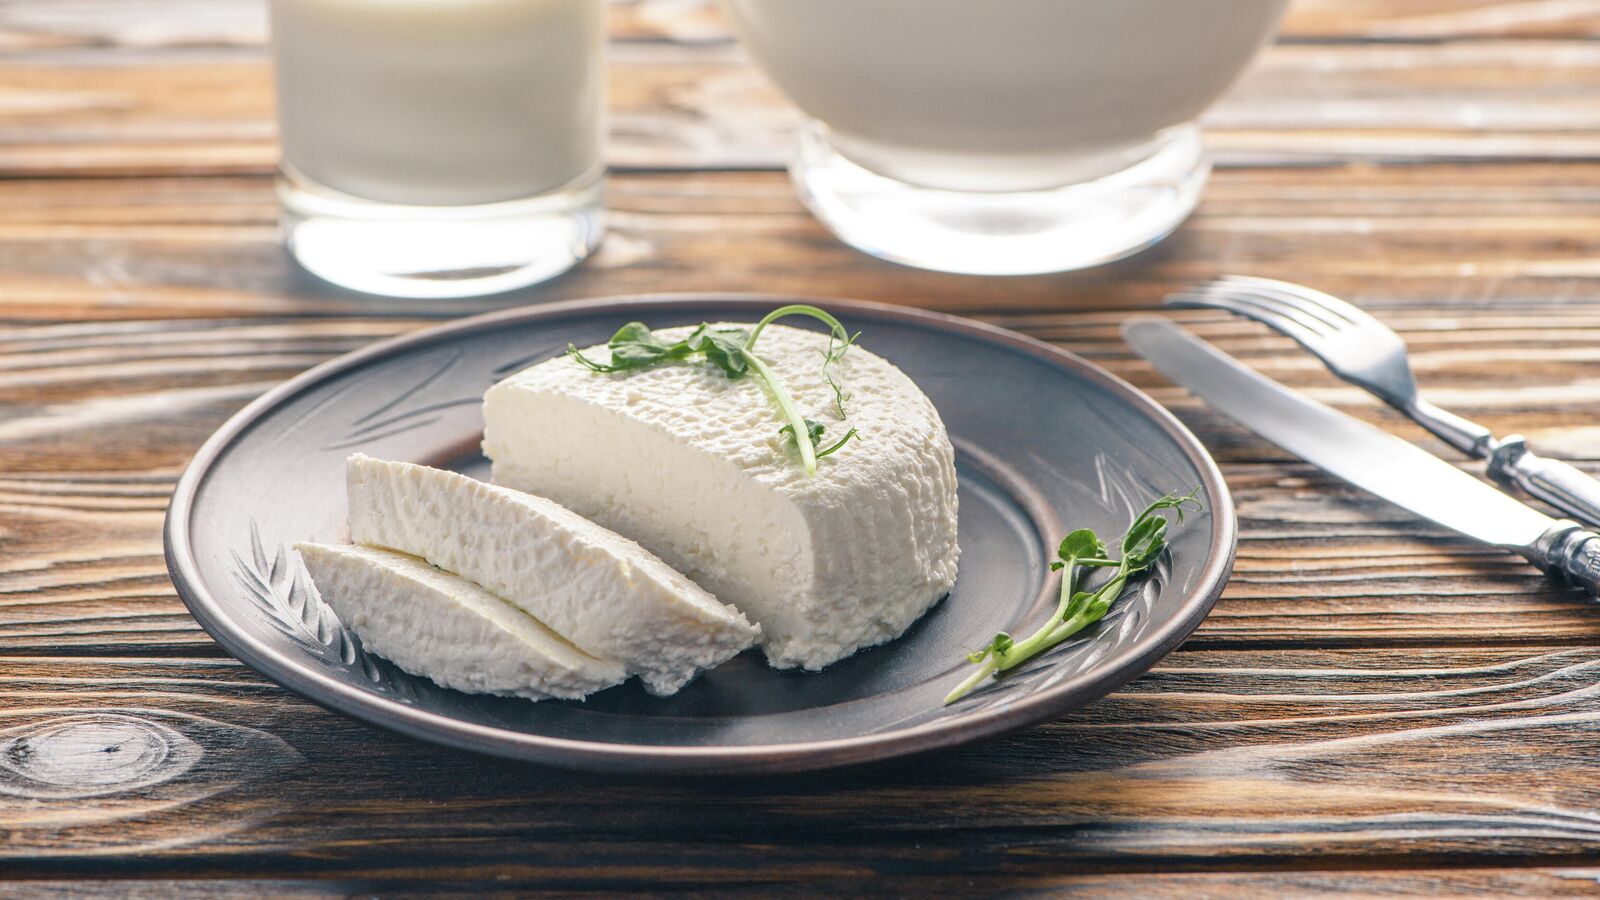 Домашний сыр из творога, пошаговый рецепт с фото на ккал